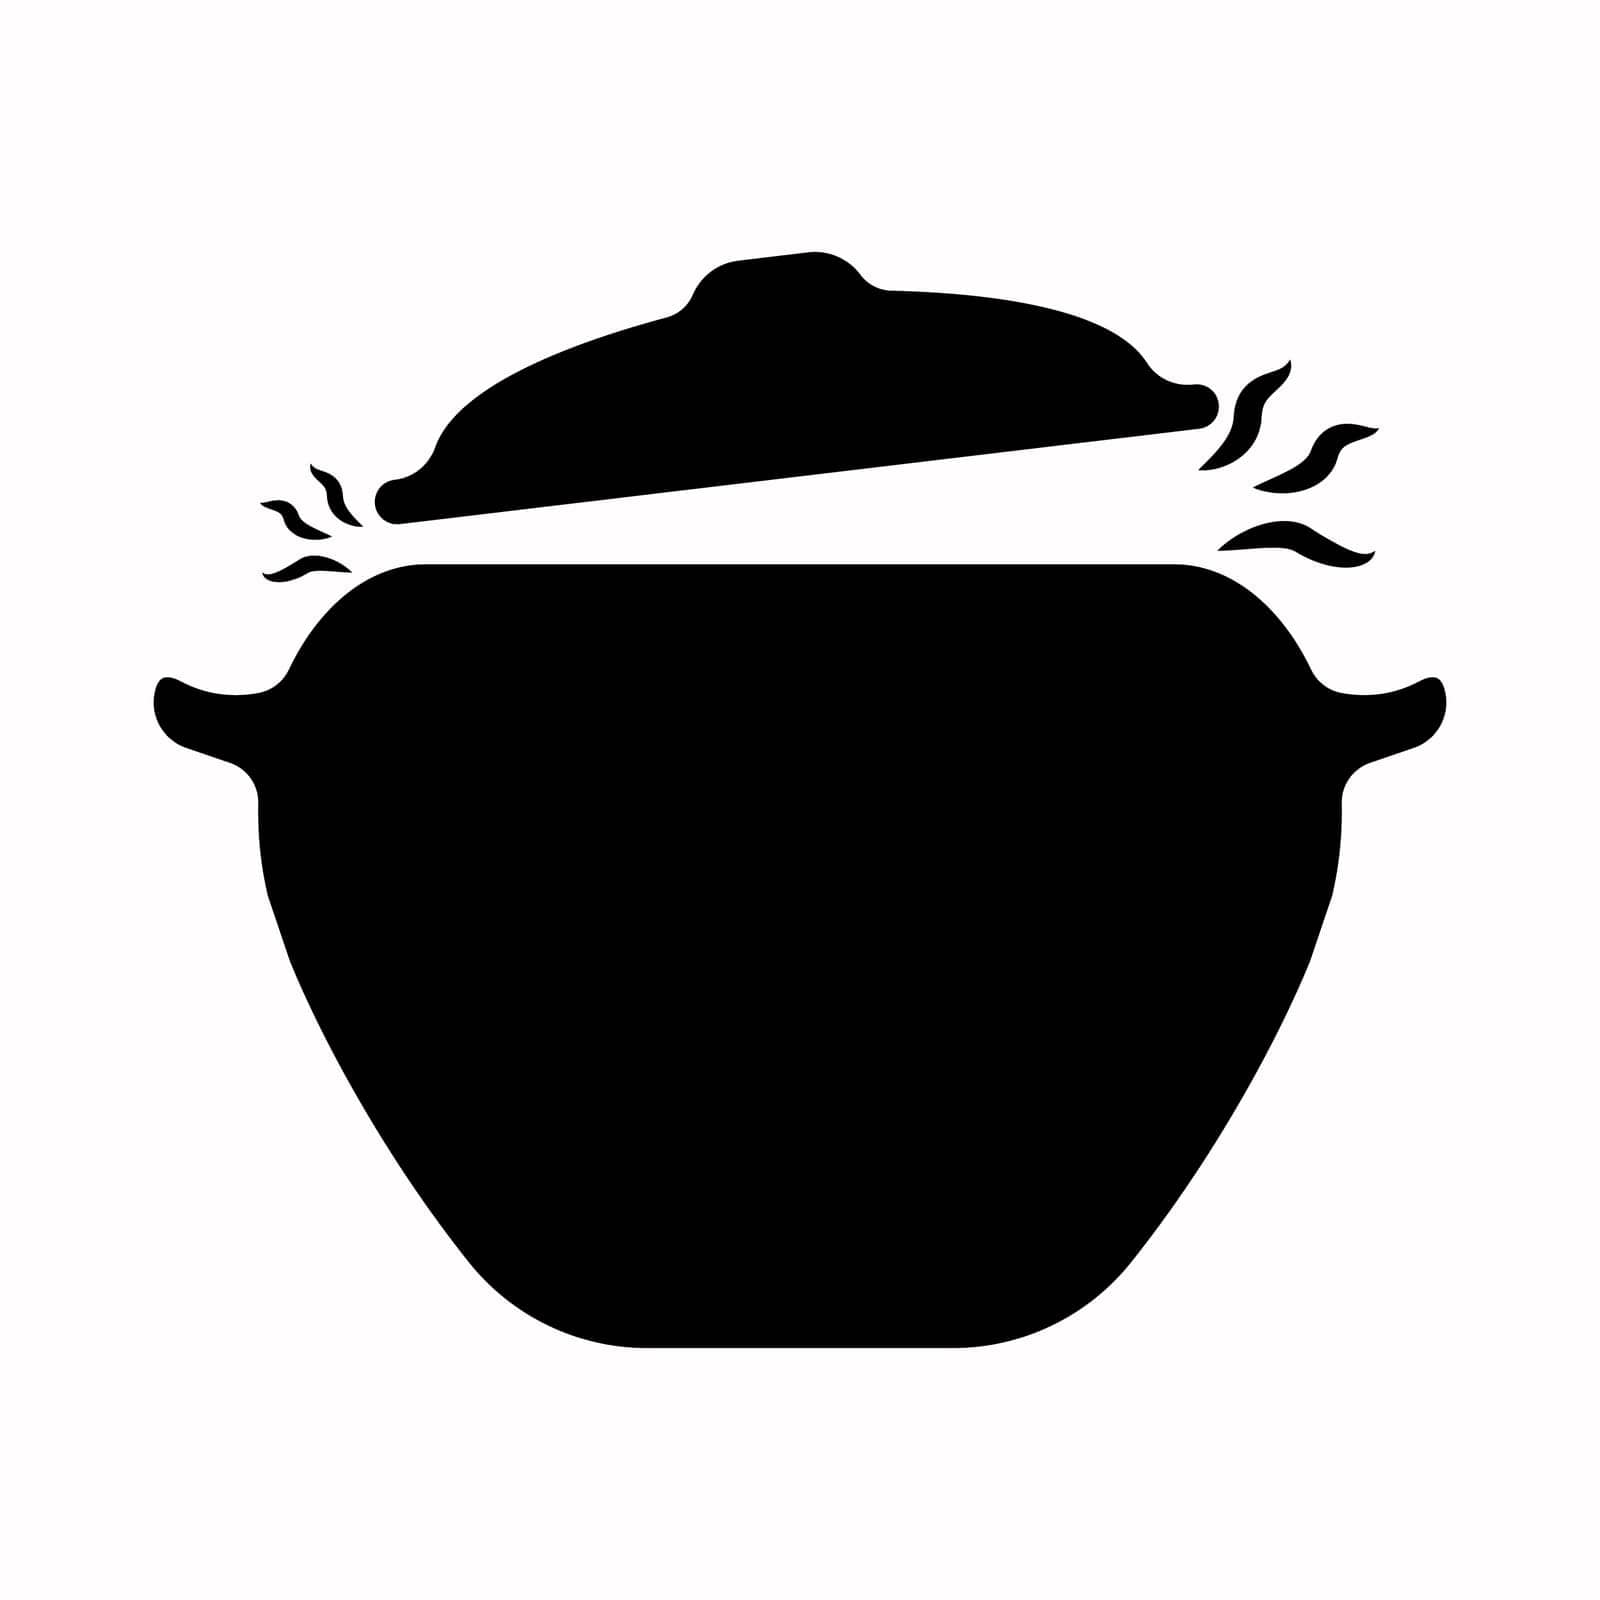 Boiling pot vector. Boiling pot vector icon. Cooking food vector. Pot with steam vector icon. Steaming icon. Boiling pot by Moreidea